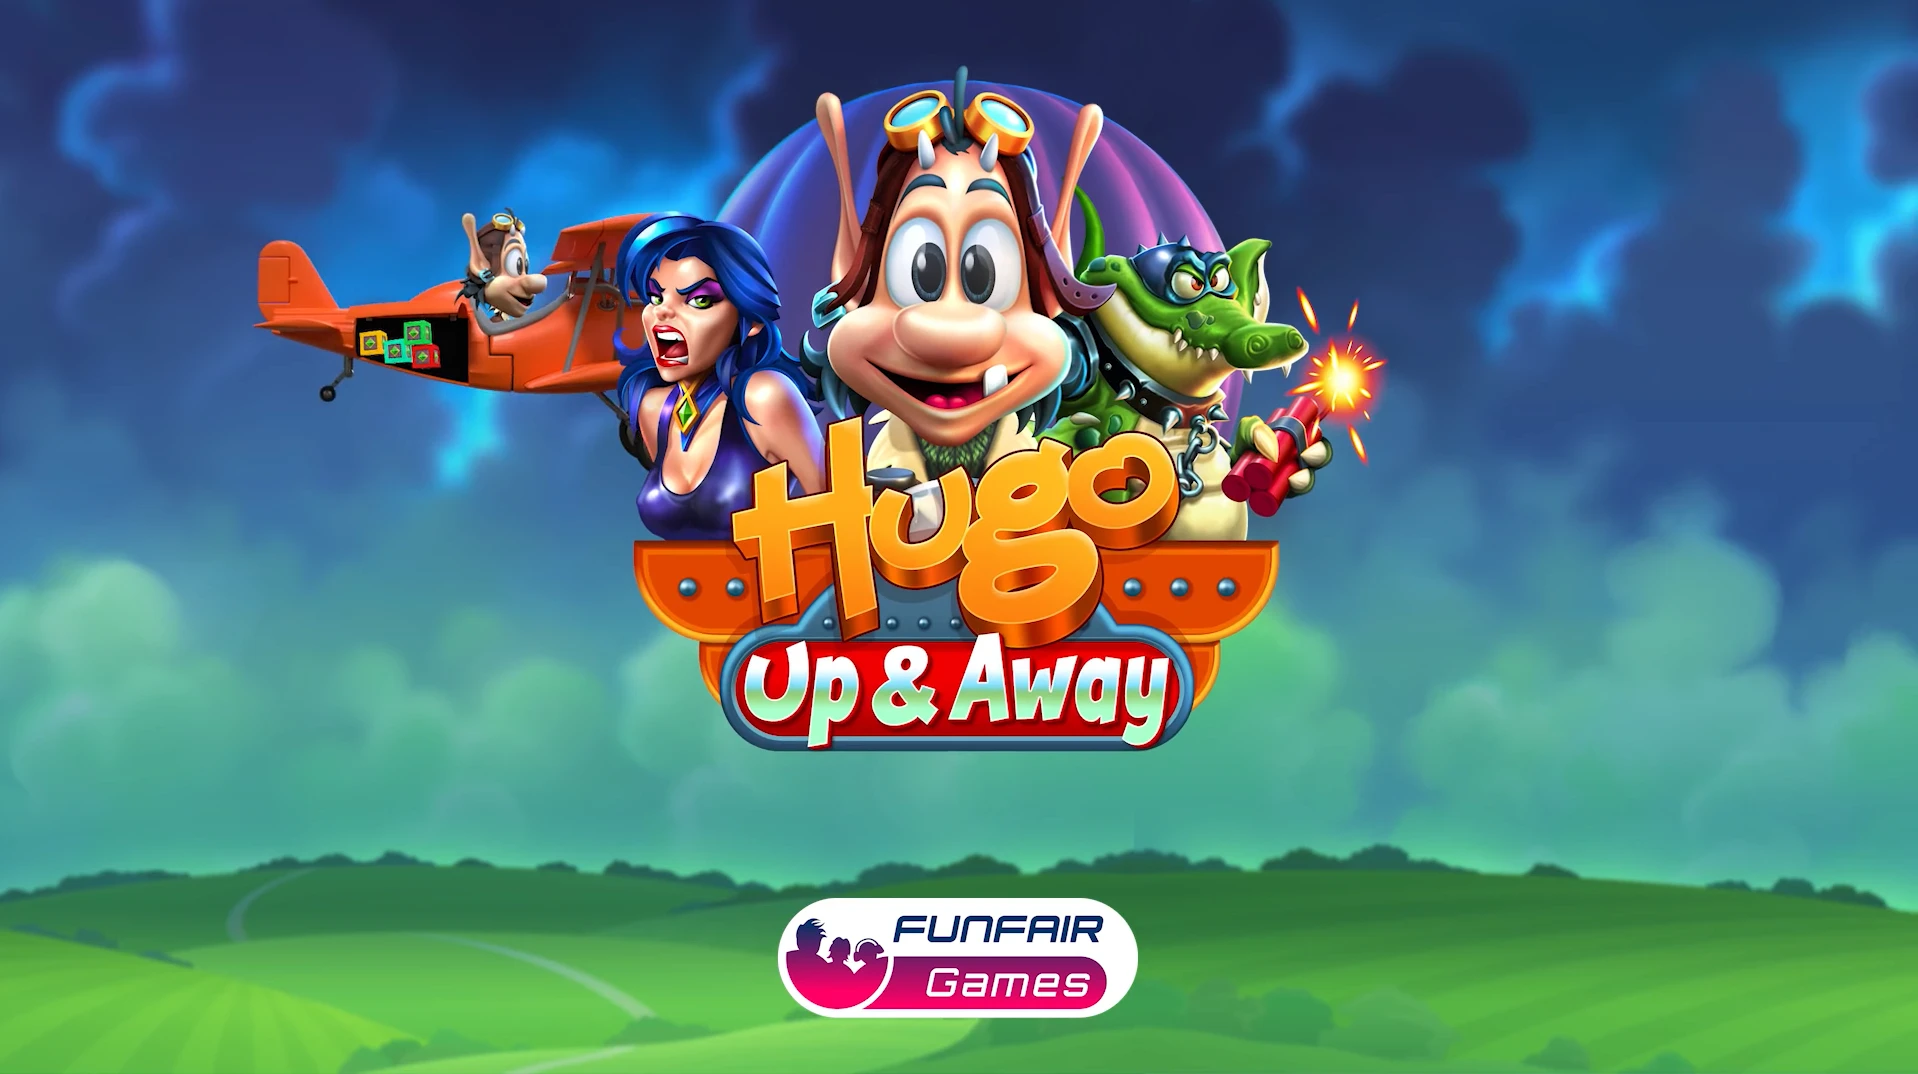 Hugo: Up & Away by Funfair Games